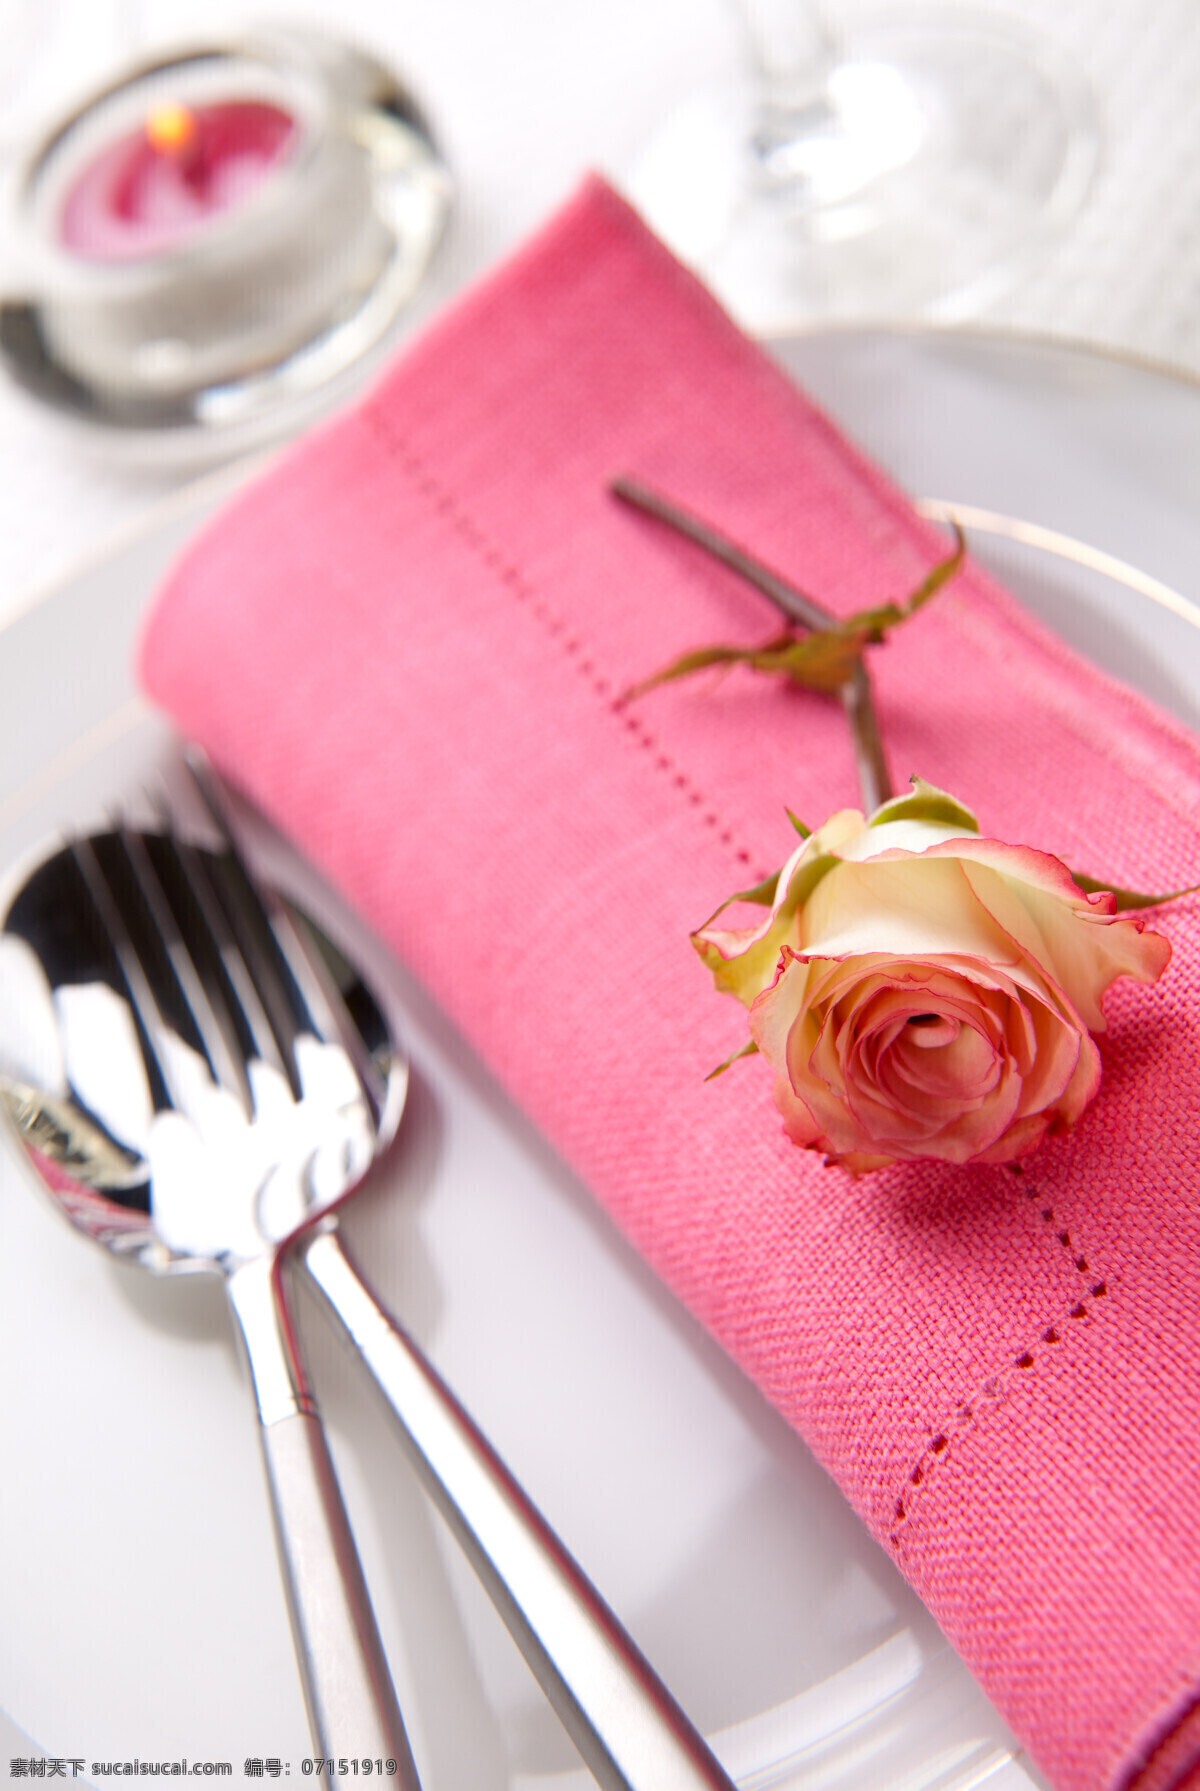 西餐餐具 刀叉 一支花朵 粉色花朵 餐具厨具 餐饮美食